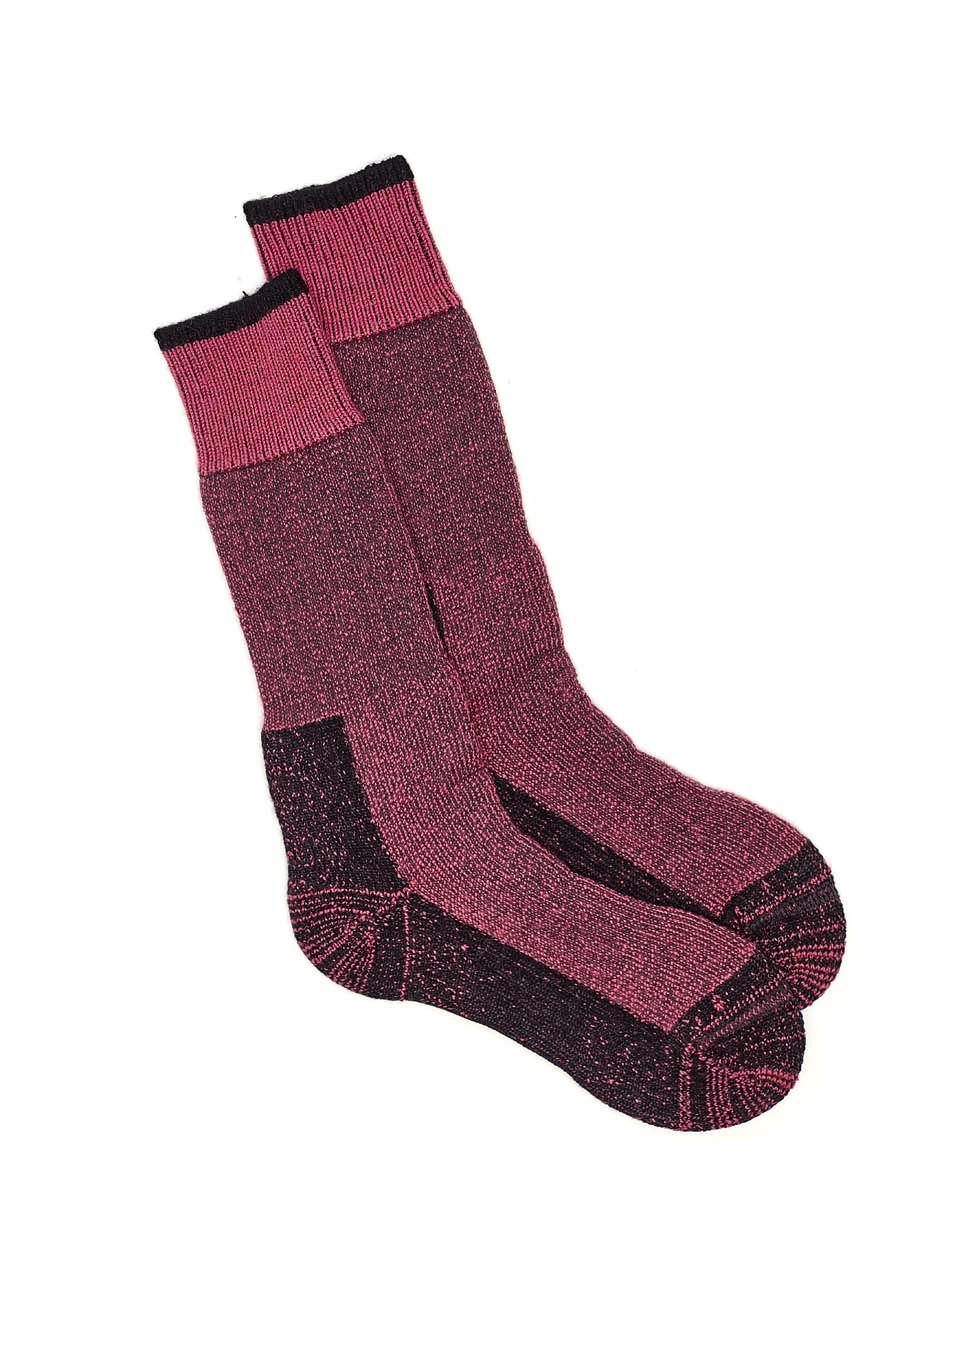 Gumboot Sock 3 Pack - Pink